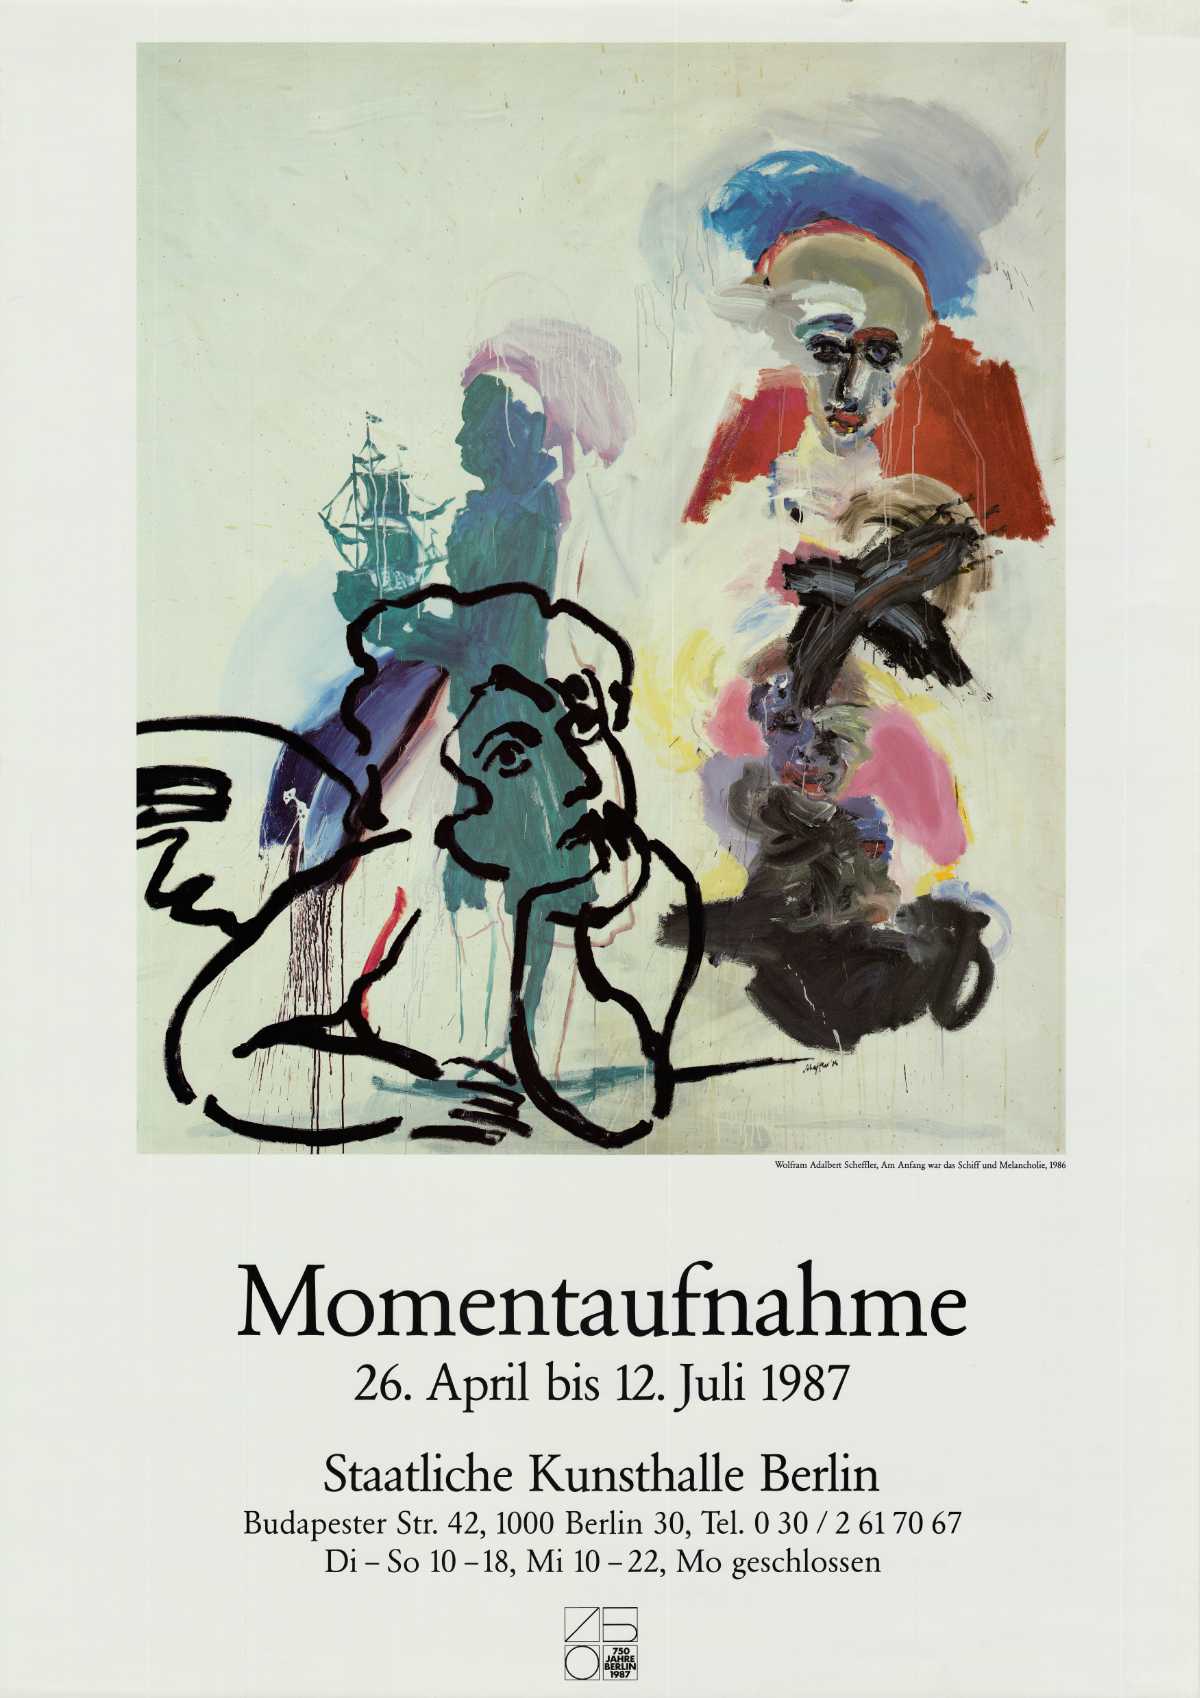 Momentaufnahme  - Staatliche Kunsthalle Berlin (Wolfram Adalbert Scheffler: Am Anfang war das Schiff und die Melancholie) 1987